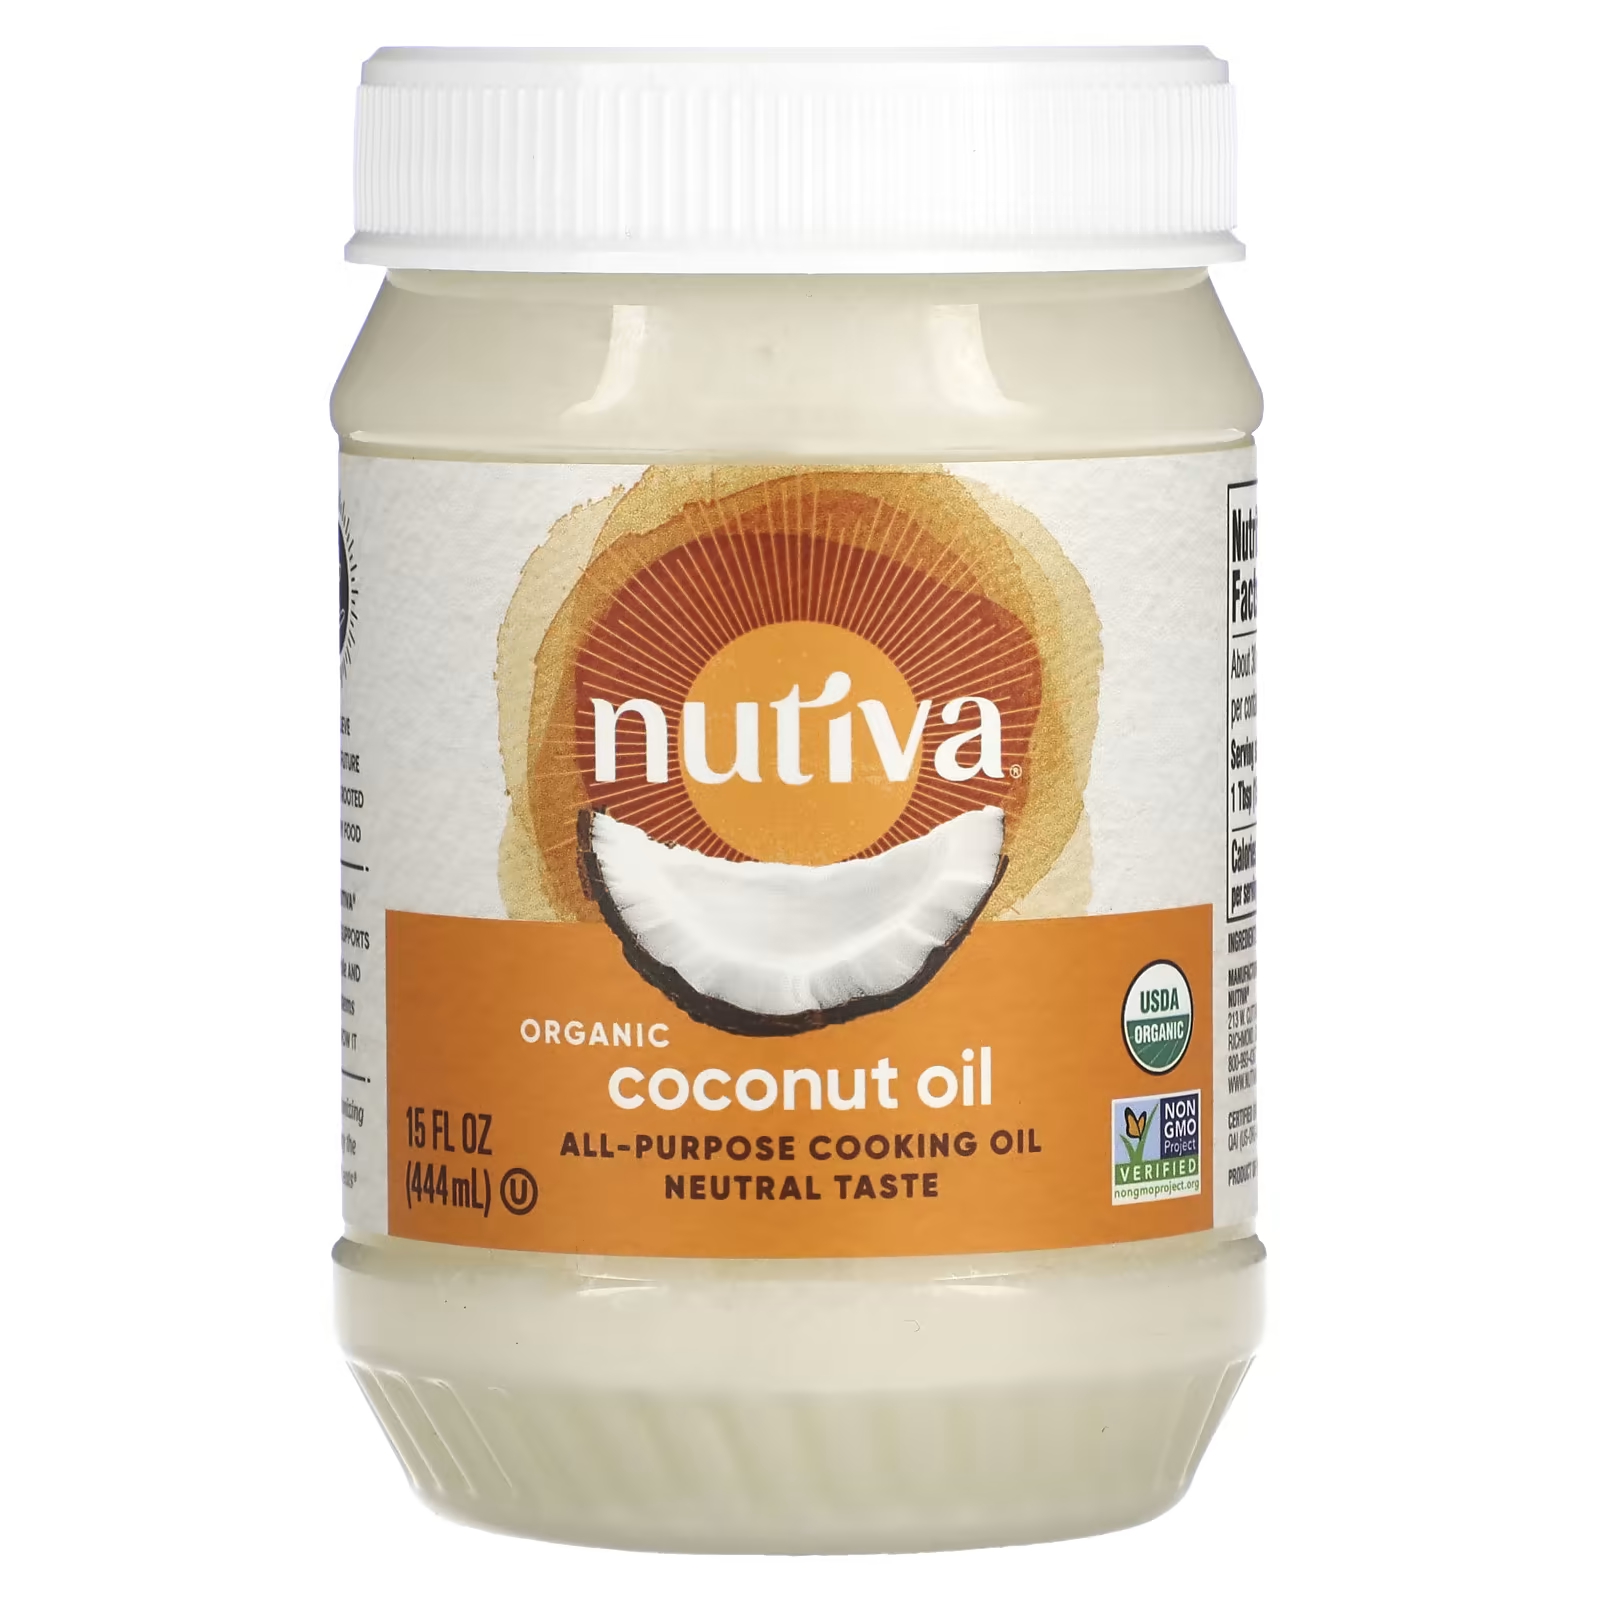 цена Универсальное кулинарное масло, органическое кокосовое масло, 15 жидких унций (444 мл) Nutiva